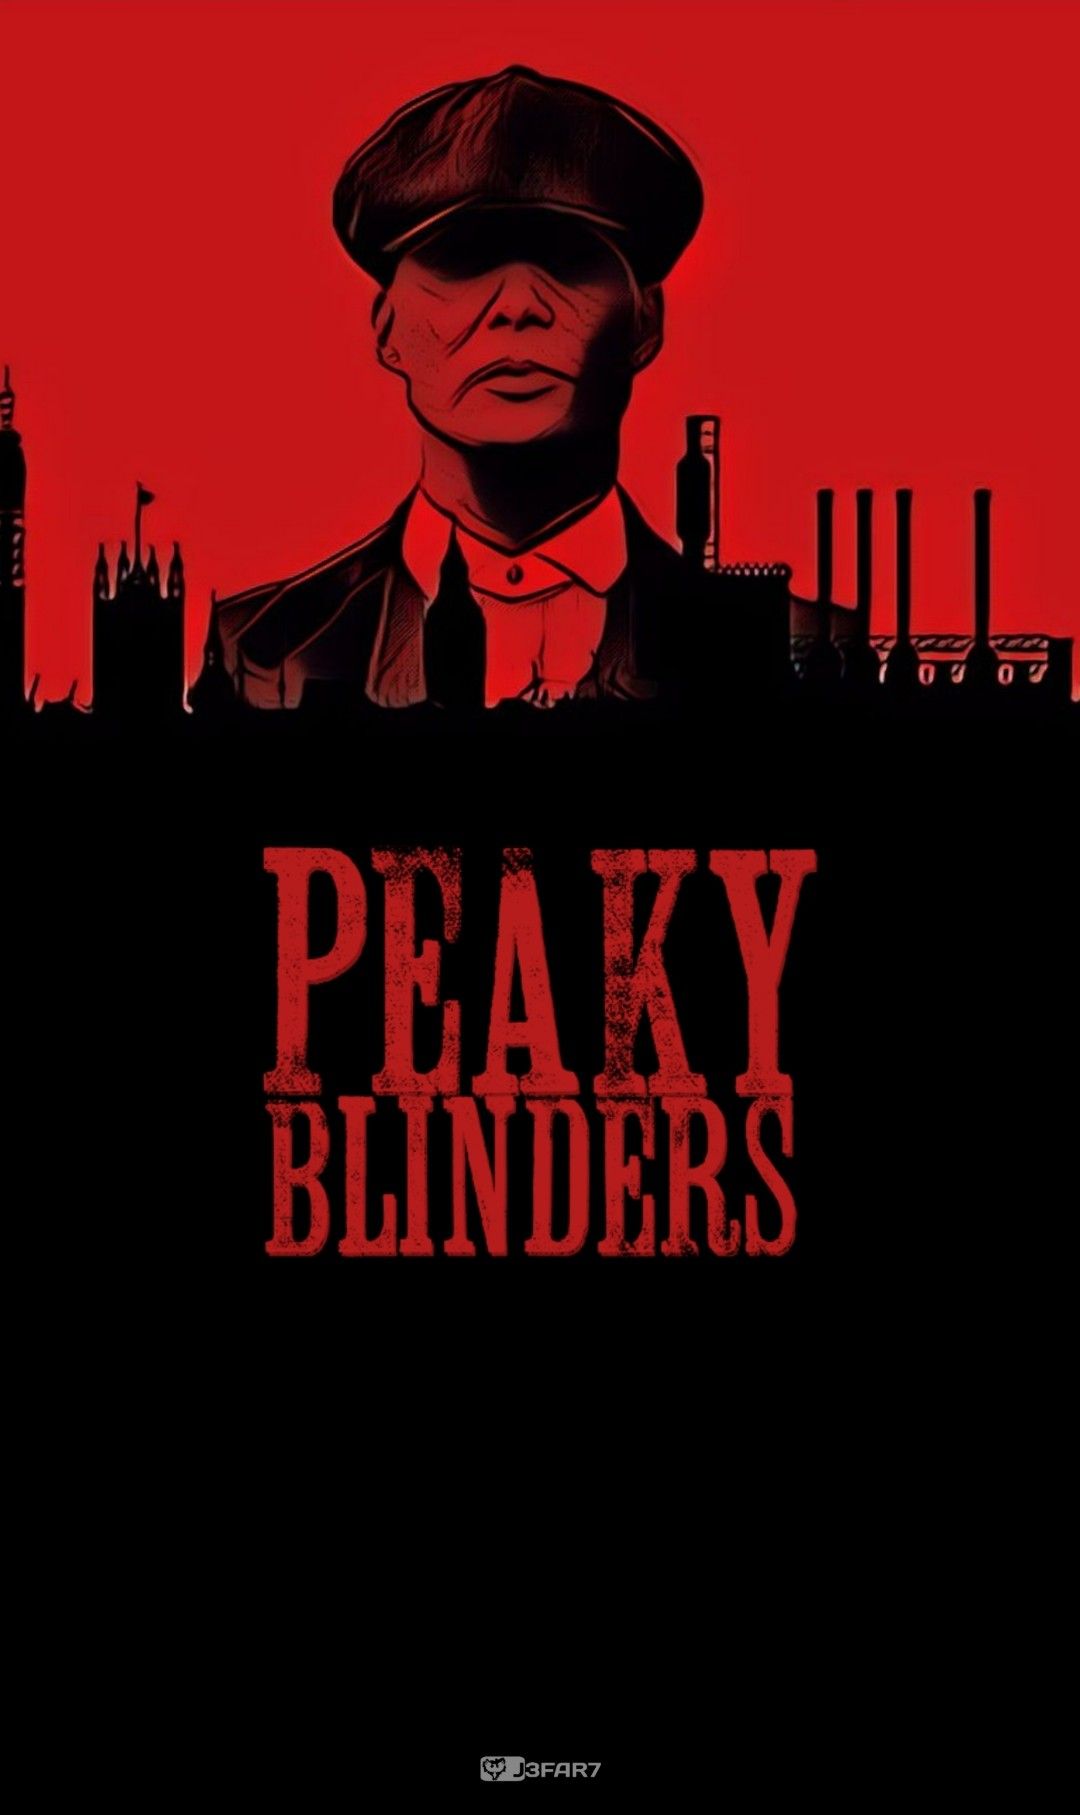 Peaky Blinders Wallpaper 